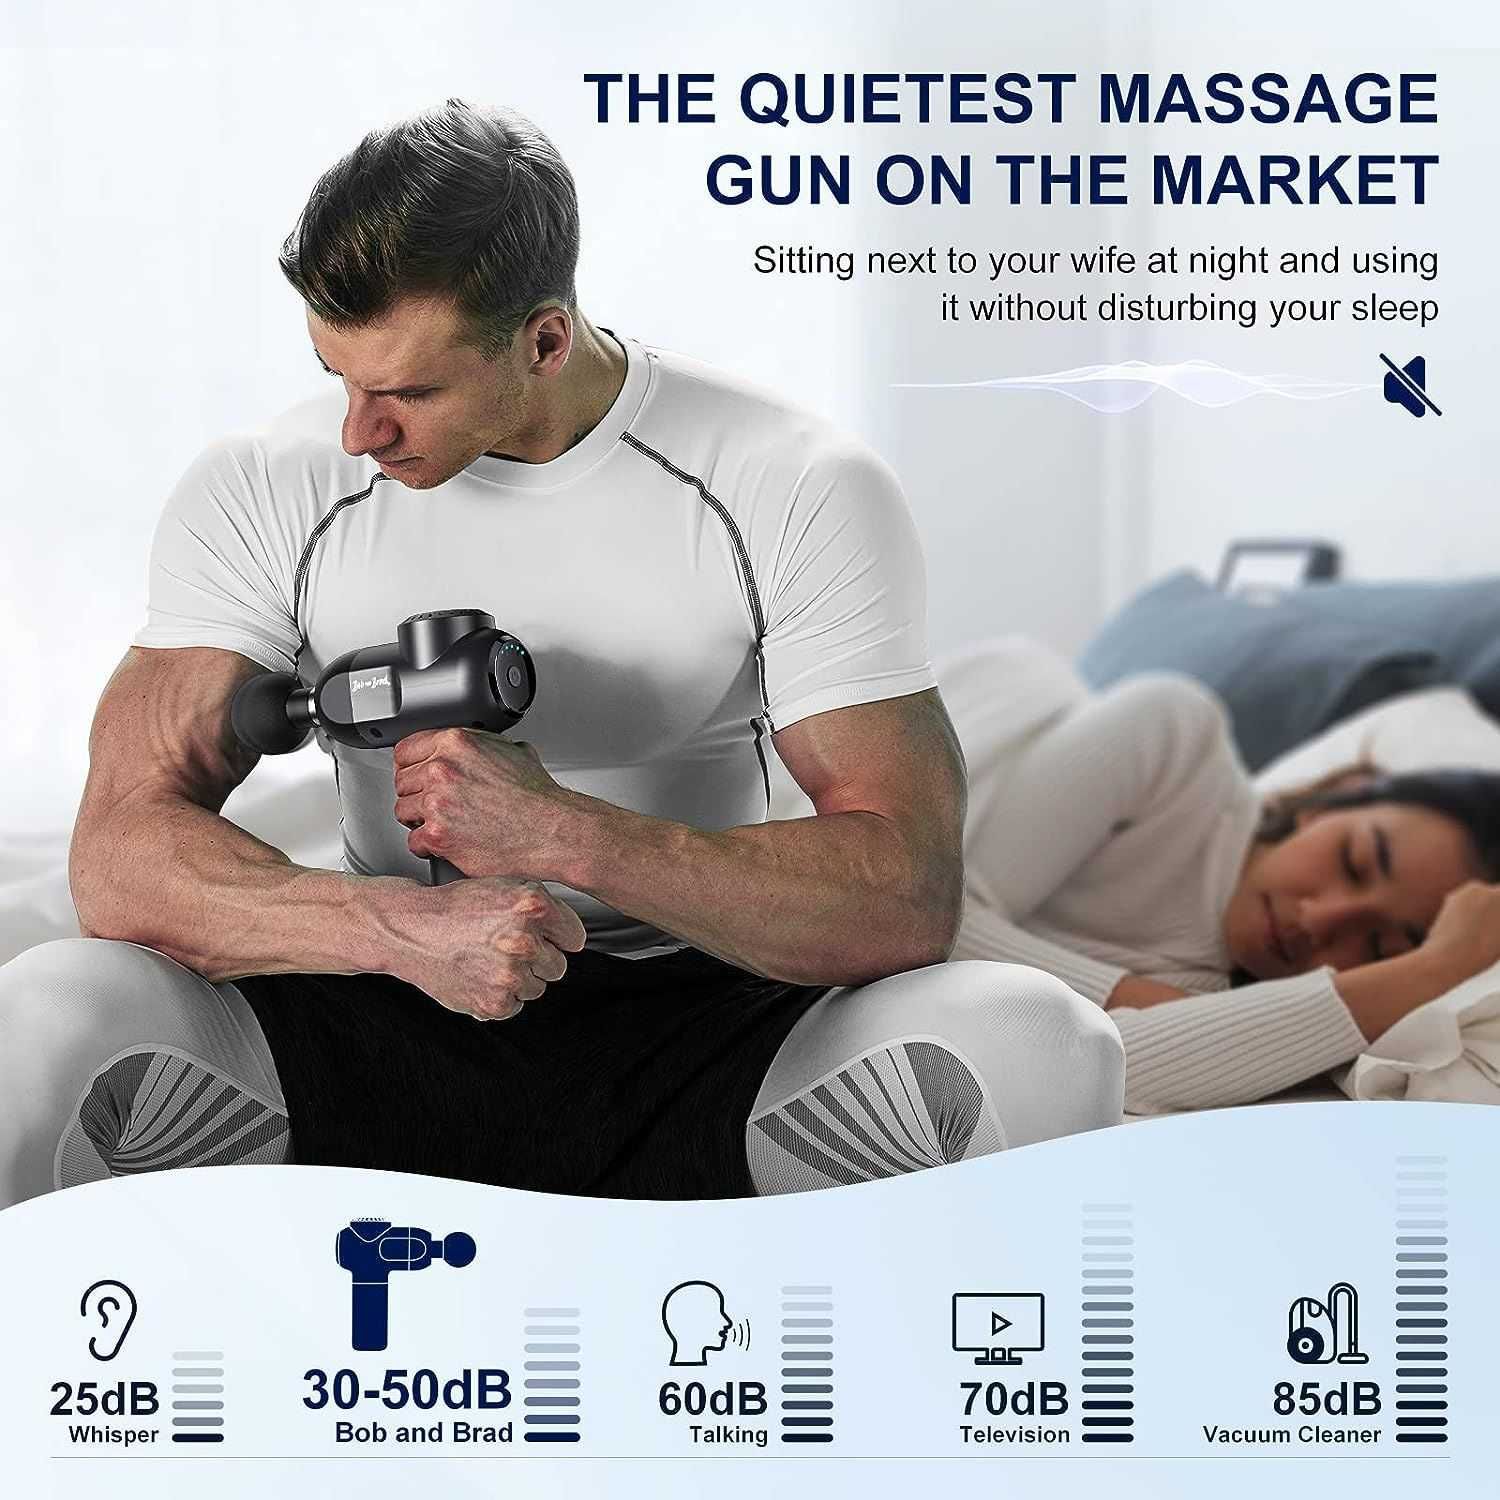 Pistolet do masażu Bob And Brad C2. Mocny masażer mięśni